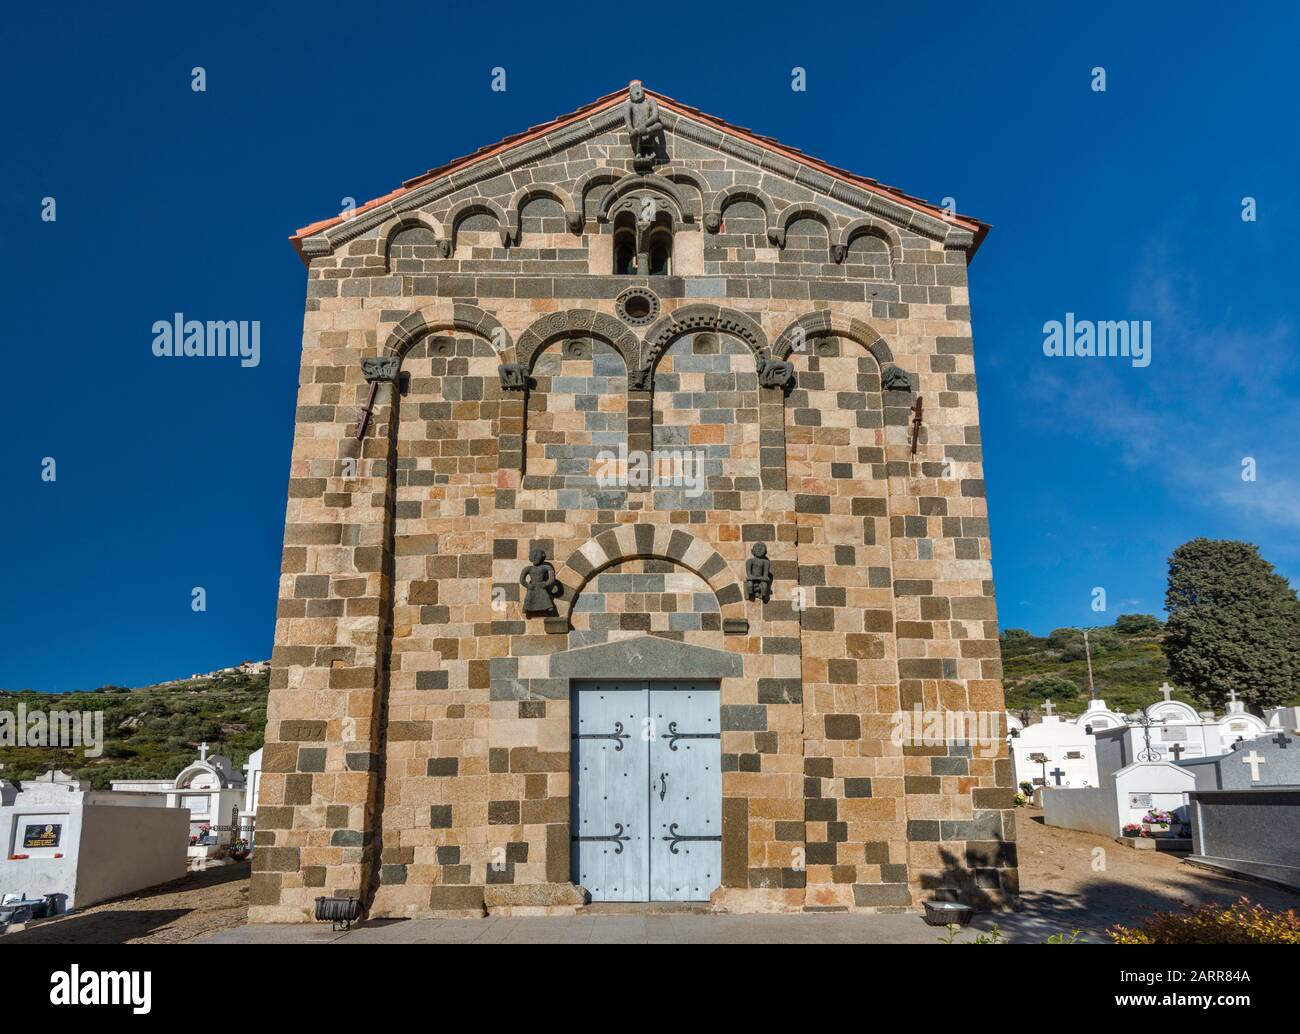 Eglise de la Trinite (Trinity Church), 11th century, Romanesque-Pisan style, in Aregno, Balagne region, Haute-Corse, Corsica, France Stock Photo